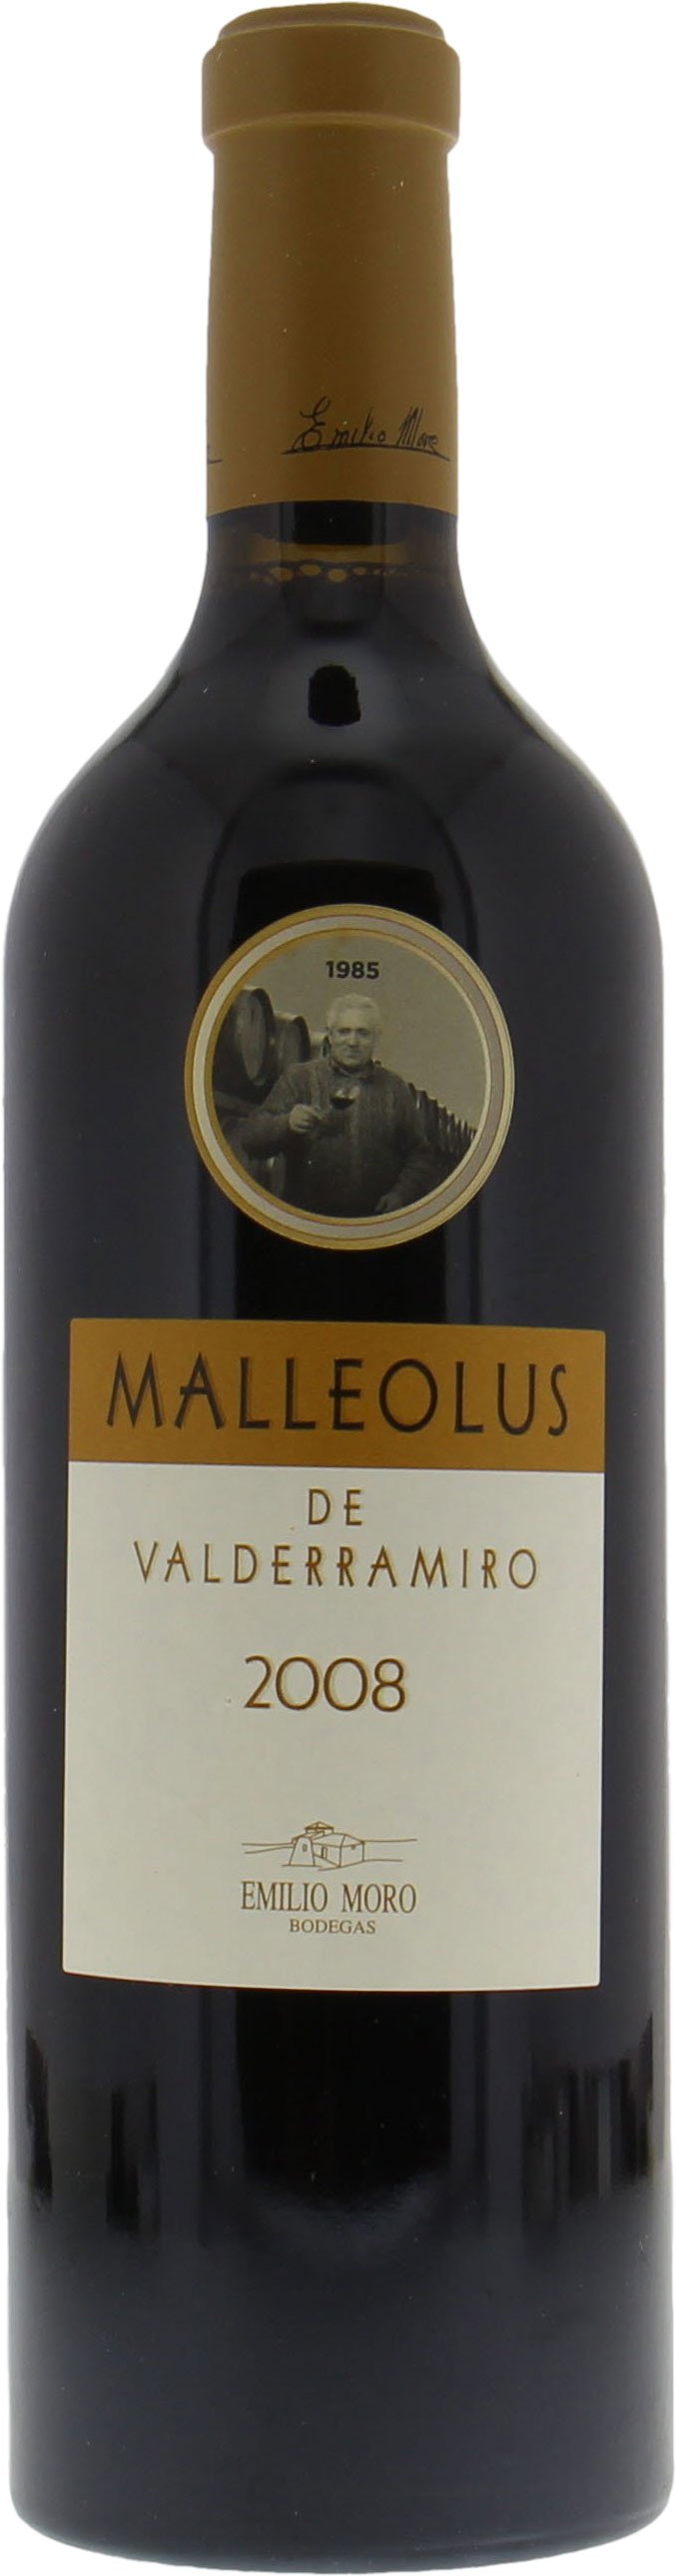 Bodegas Emilio Moro - Malleolus de Valderramiro 2008 Perfect